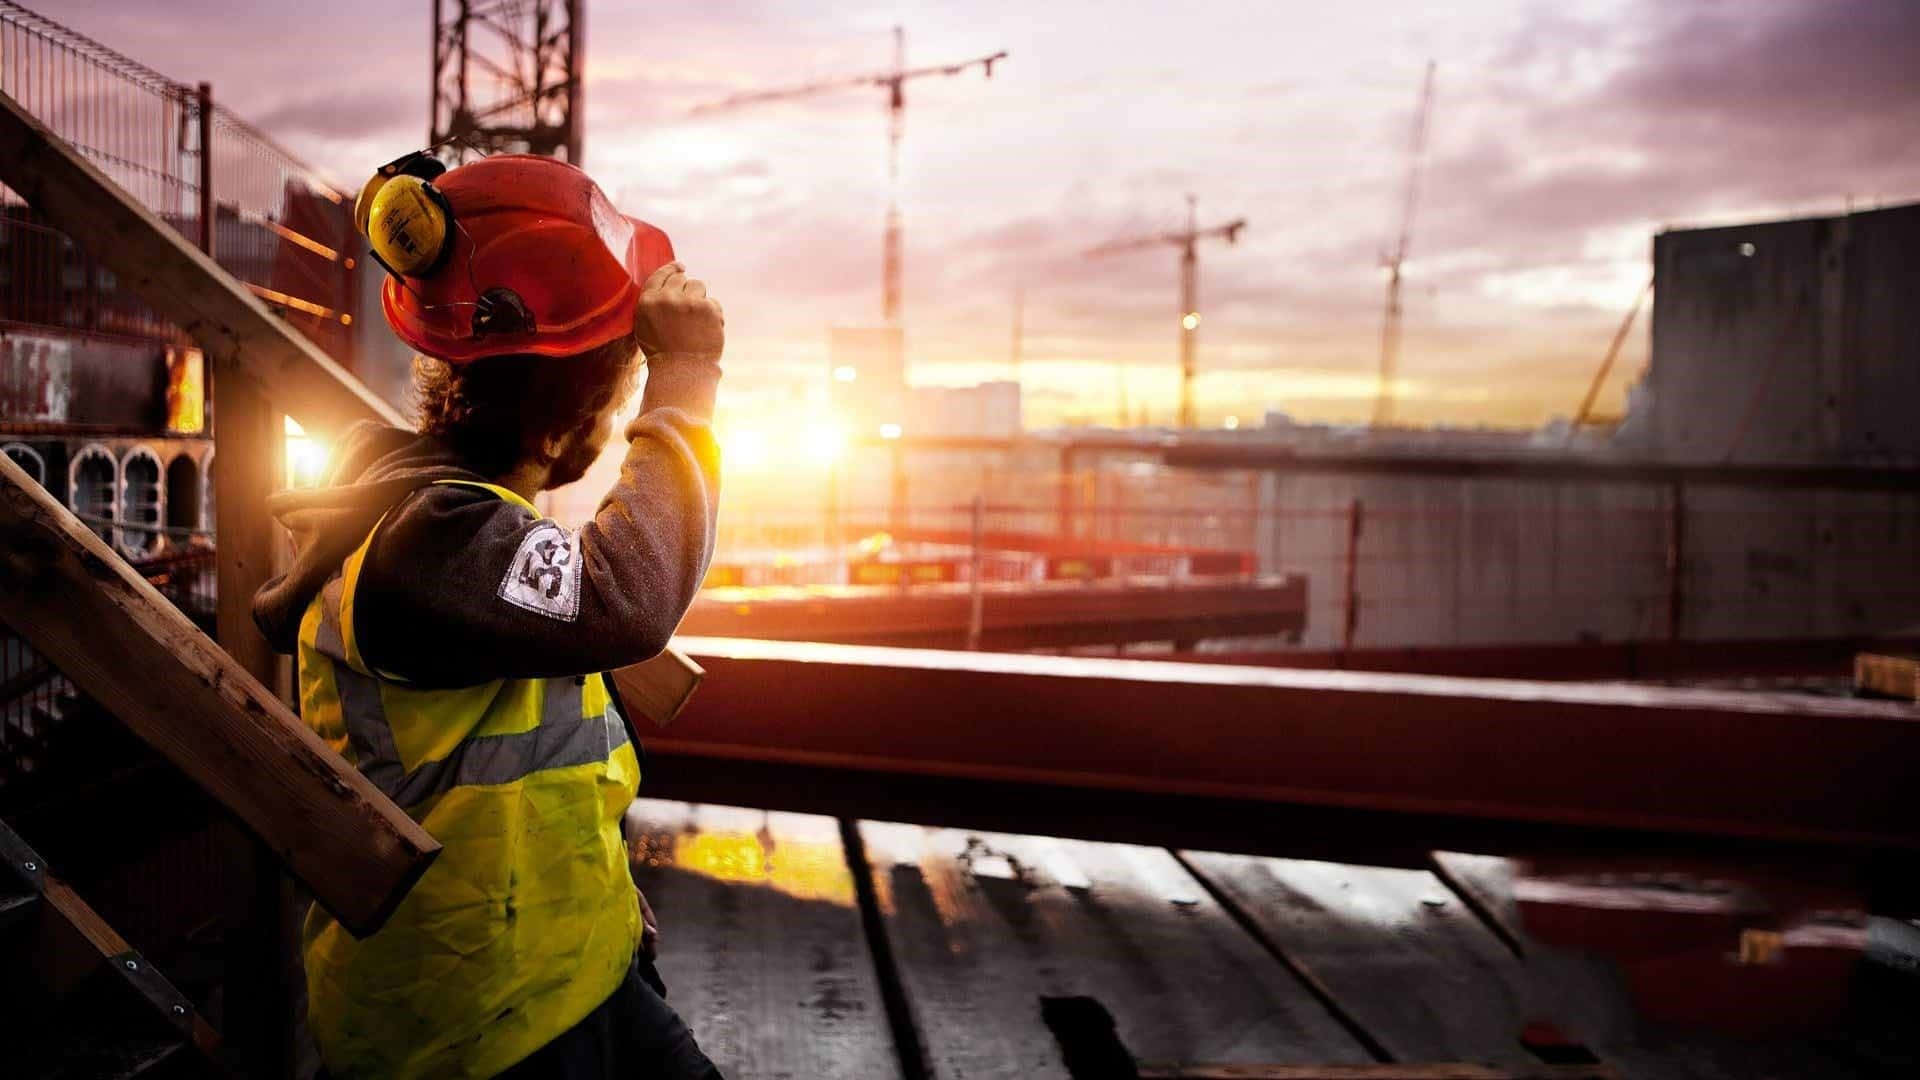 Enbygningsarbejder Står På En Stige Ved Solnedgang.